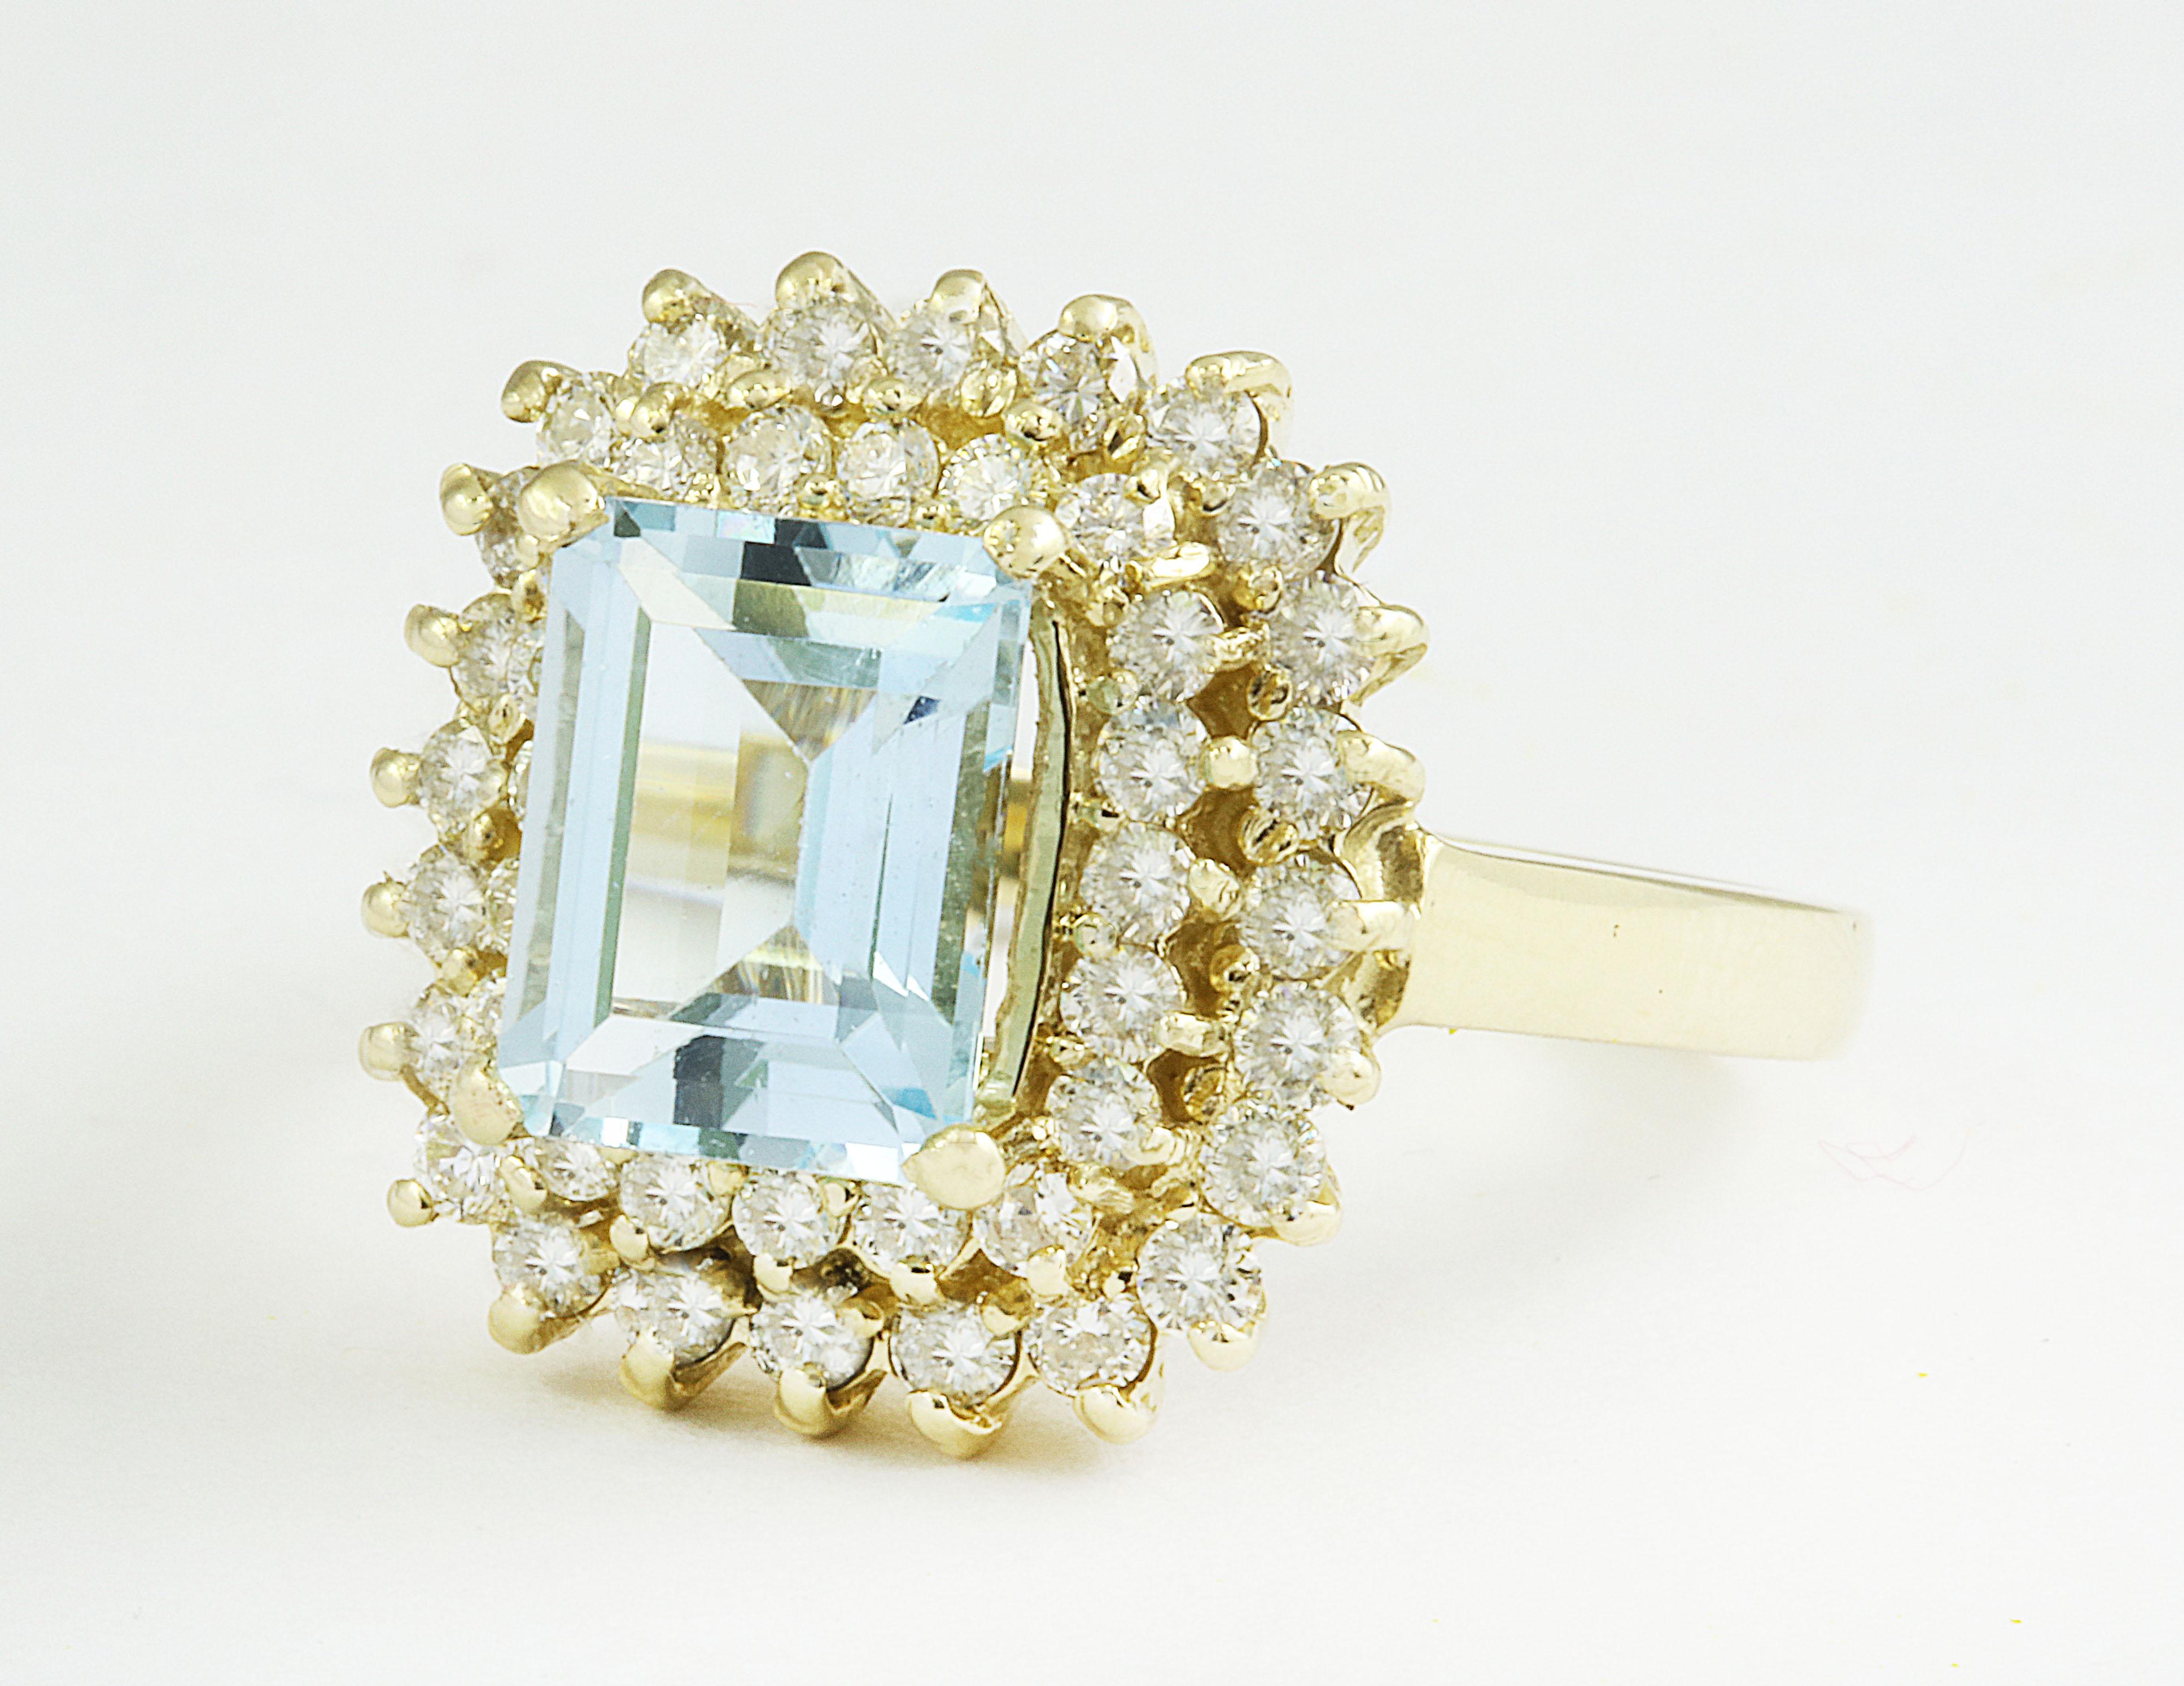 Erhöhen Sie Ihre Eleganz mit unserem 2,95 Karat Aquamarin-Diamantring aus 14 Karat Gelbgold. Mit einem fesselnden 2,00-Karat-Aquamarin und 0,95-Karat-Diamanten ist dieser Ring ein Statement der Raffinesse. Mit einem Gesamtgewicht von 5,8 Gramm und